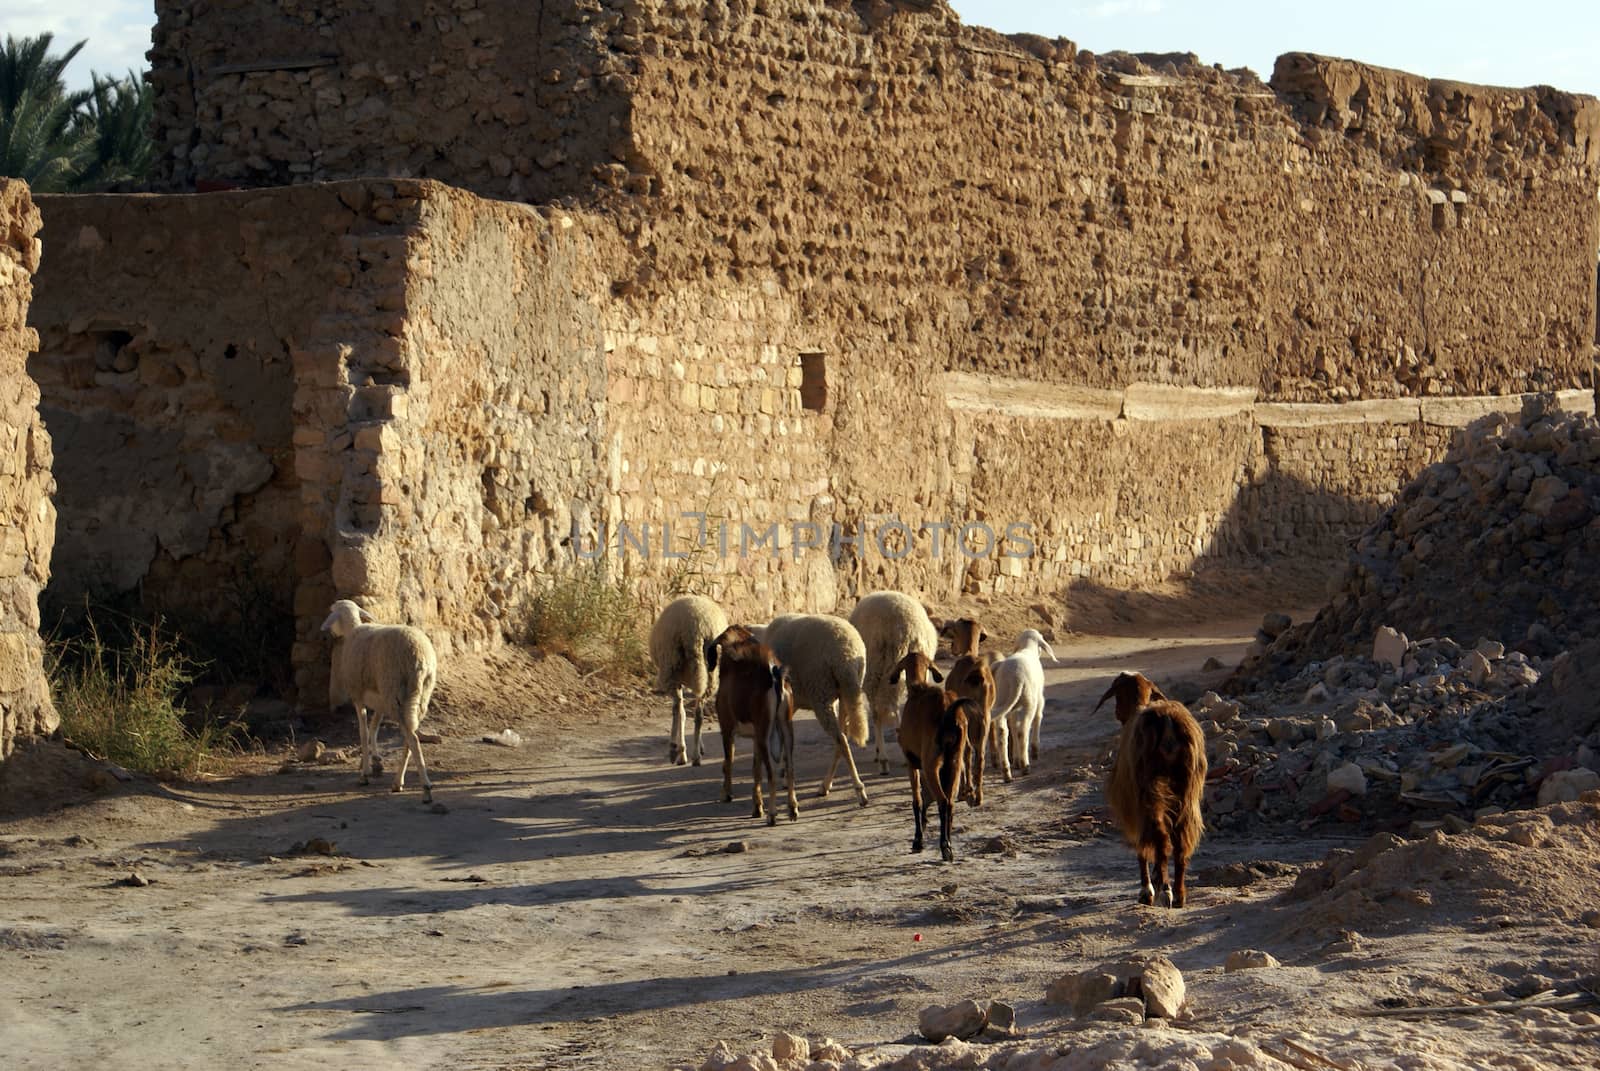 Sheep on the road and ruins of Kebili, Tunisia                